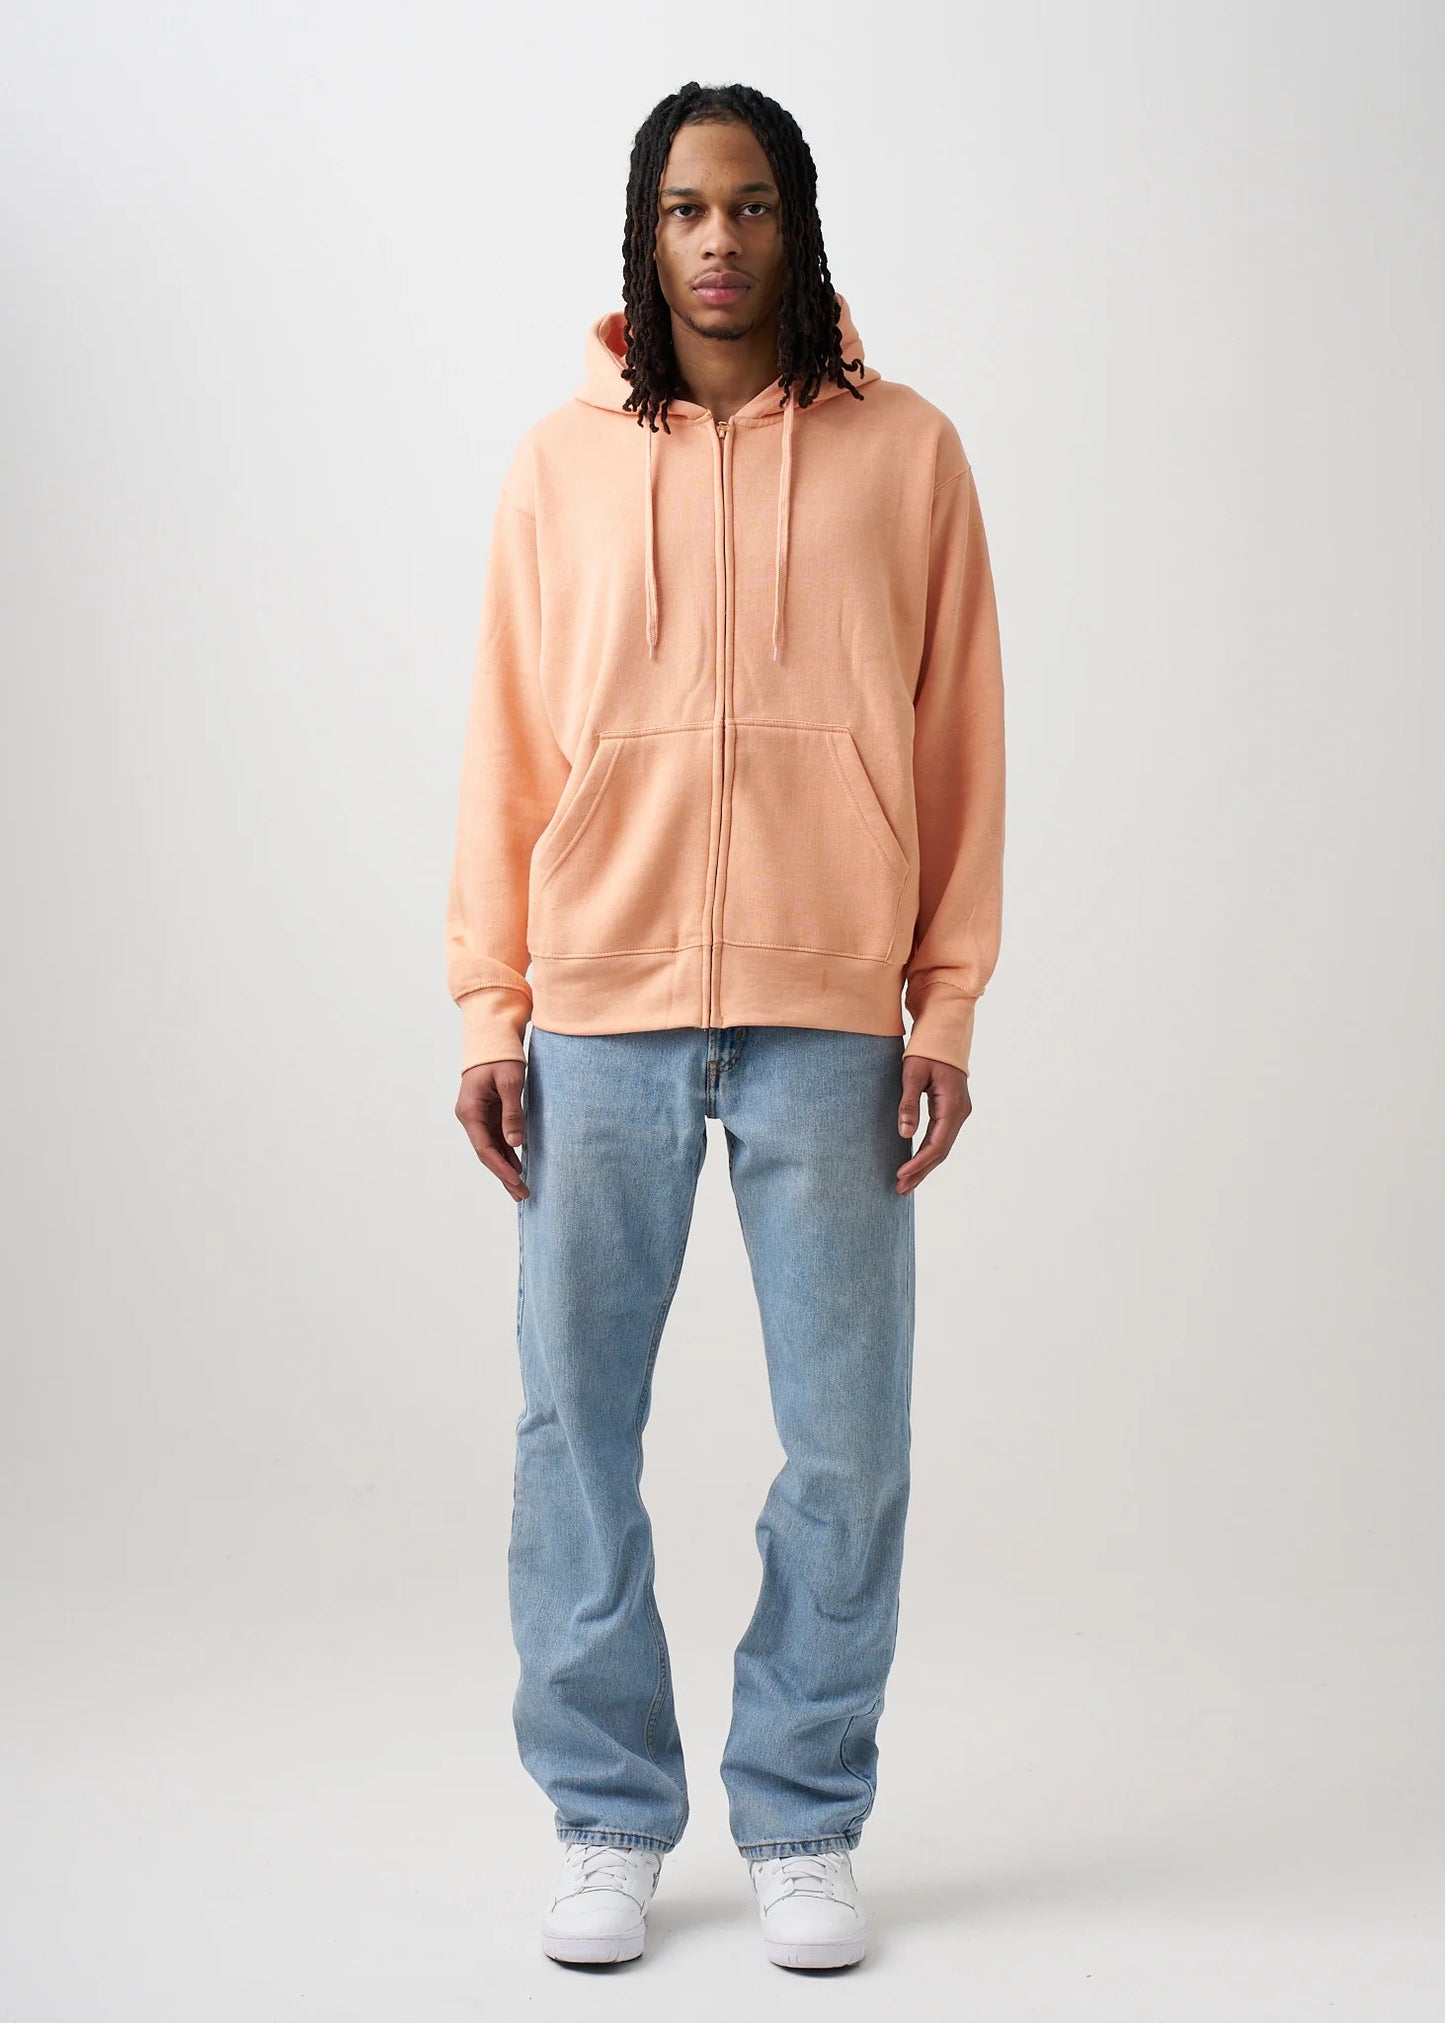 Peach Heavy Blend Zip-Up Fleece Hooded SweatShirt